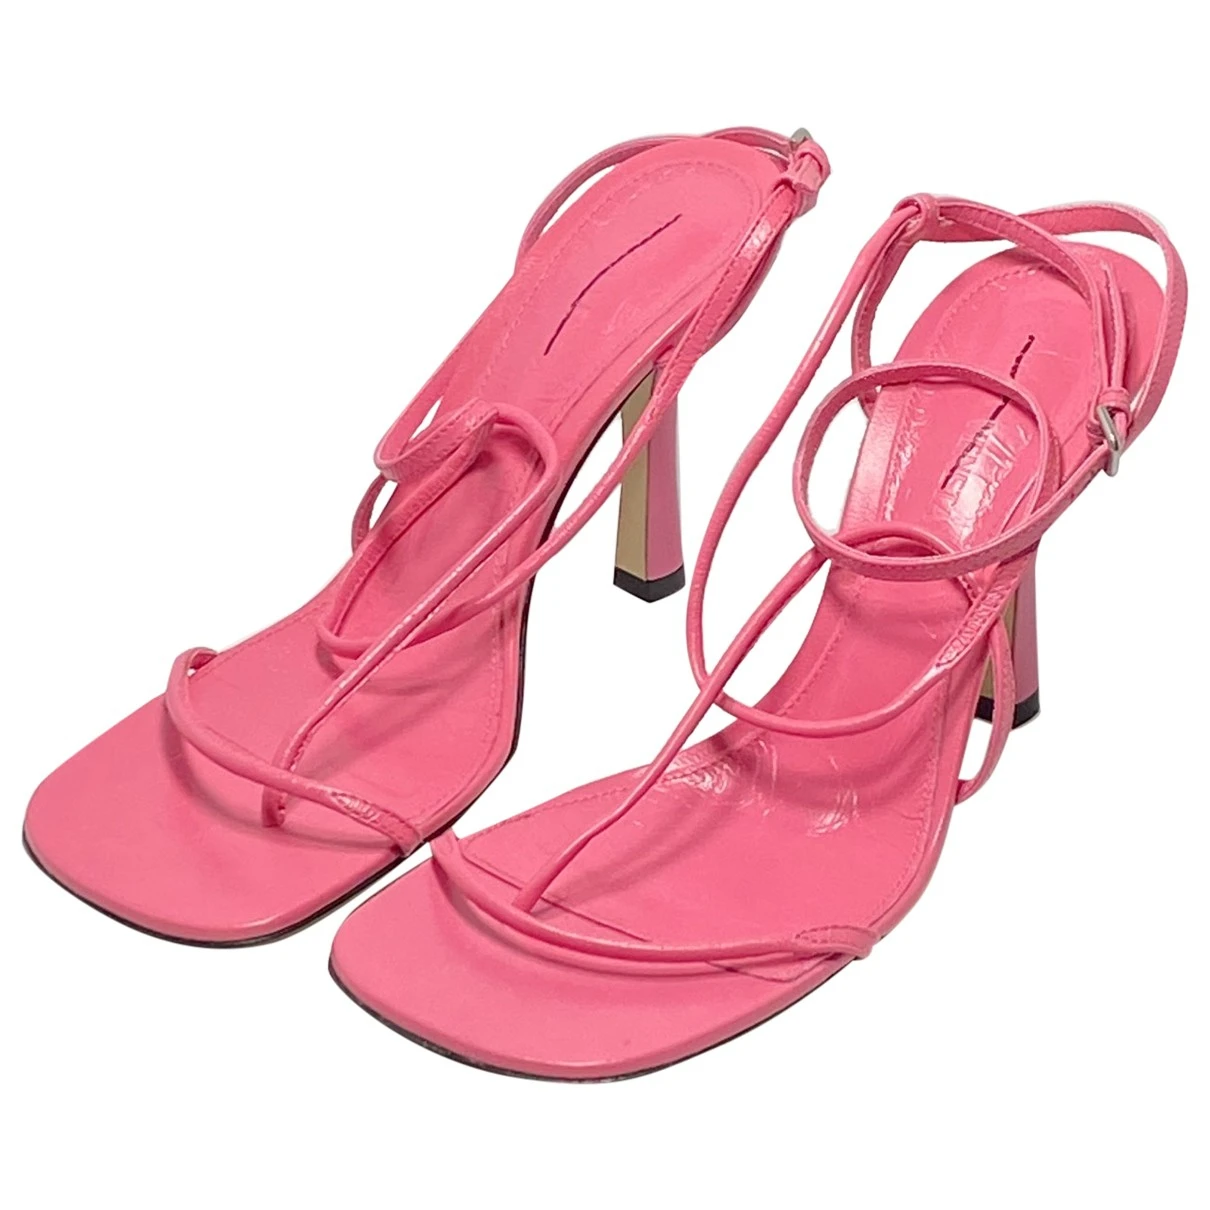 shoes Bottega Veneta sandals for Female Leather 36.5 EU. Used condition